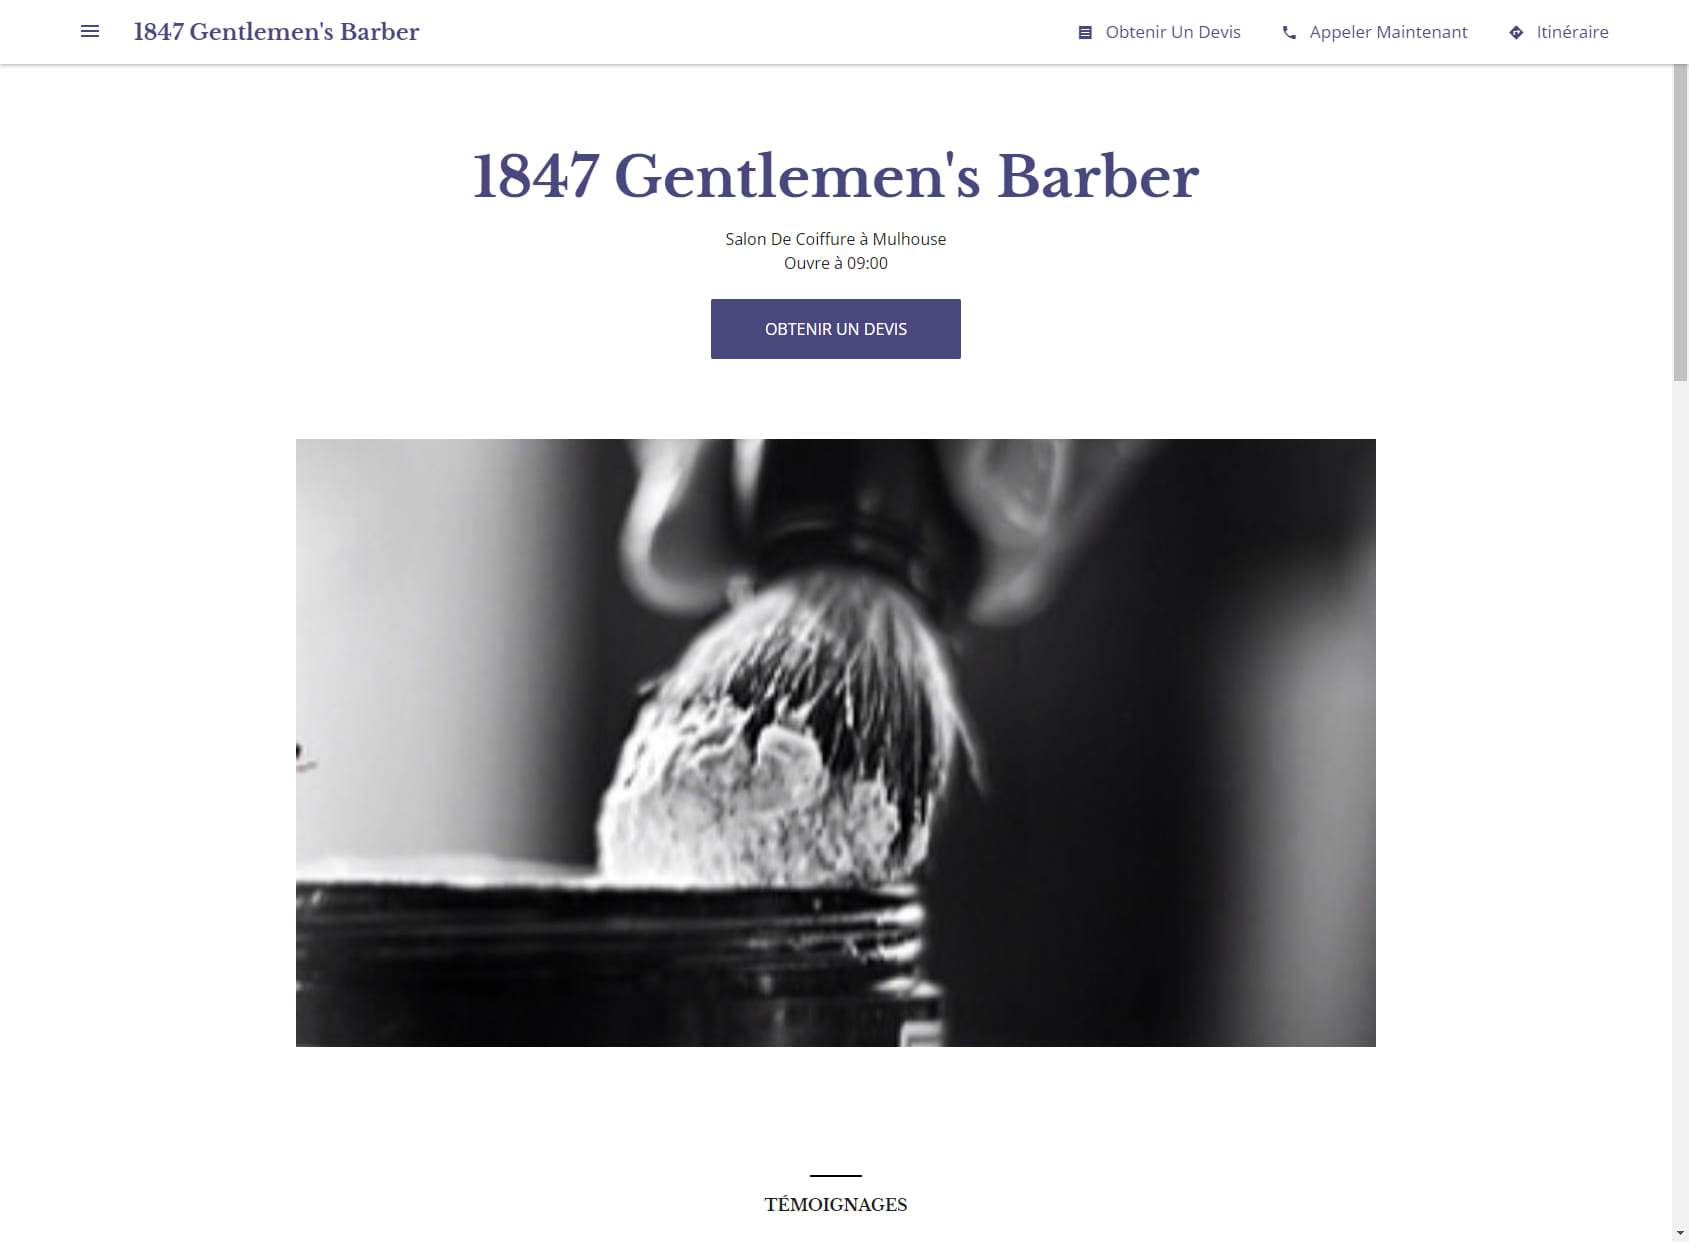 Gentlemen's Barber